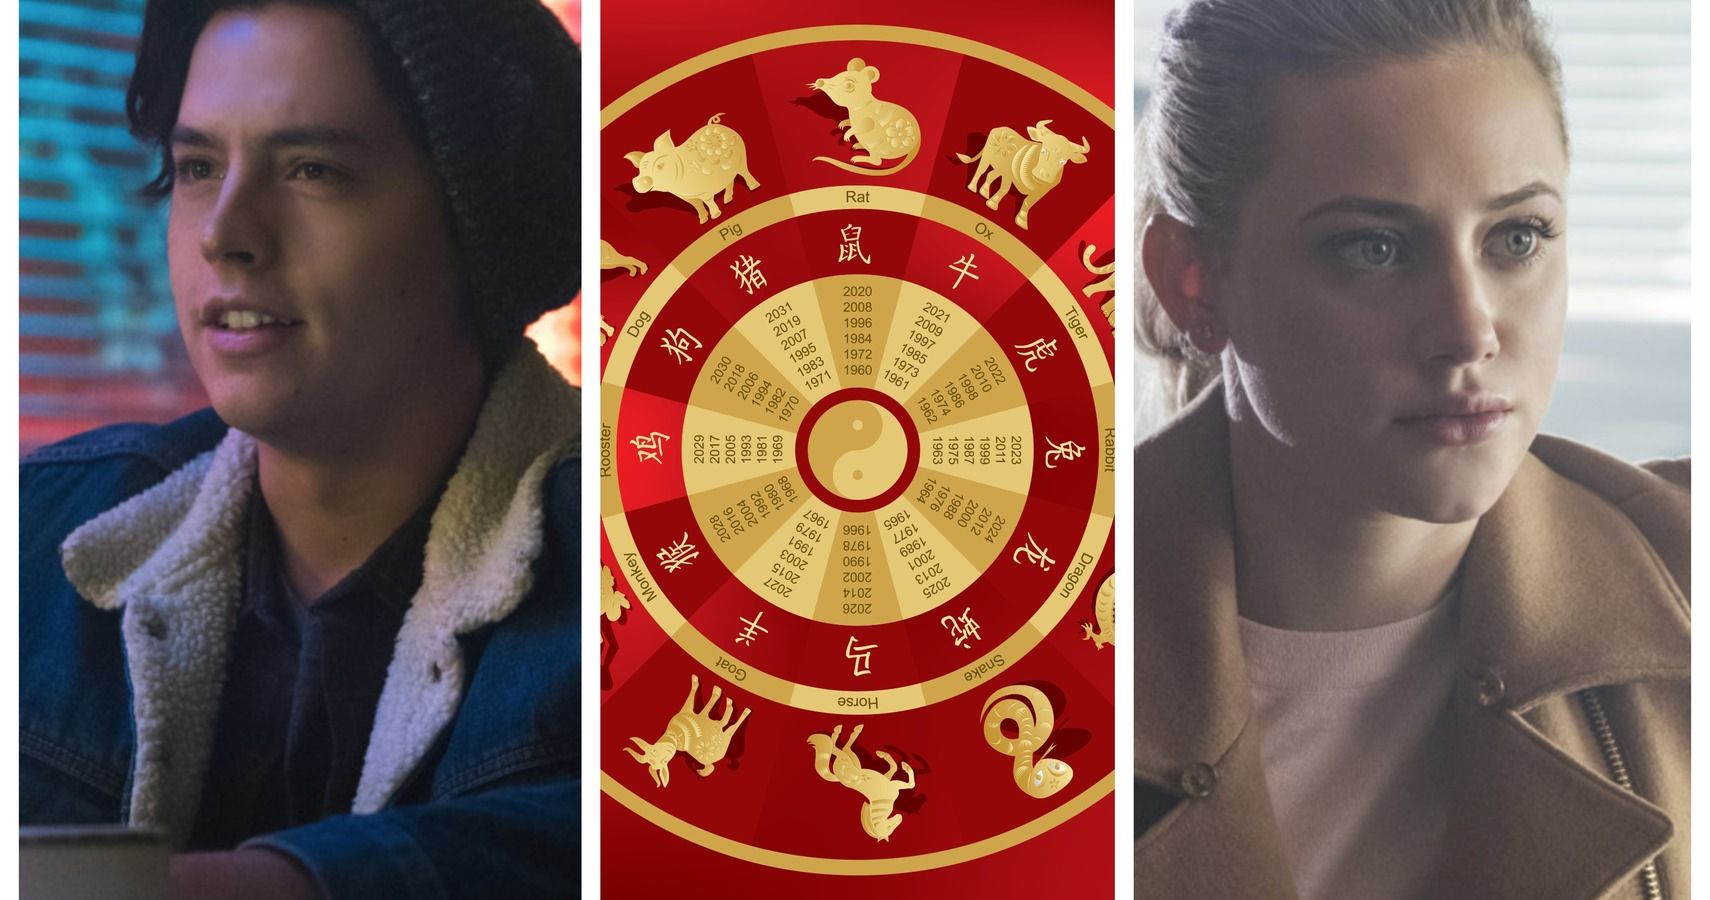 ¿Qué adolescente de Riverdale se basa en su zodiaco chino?